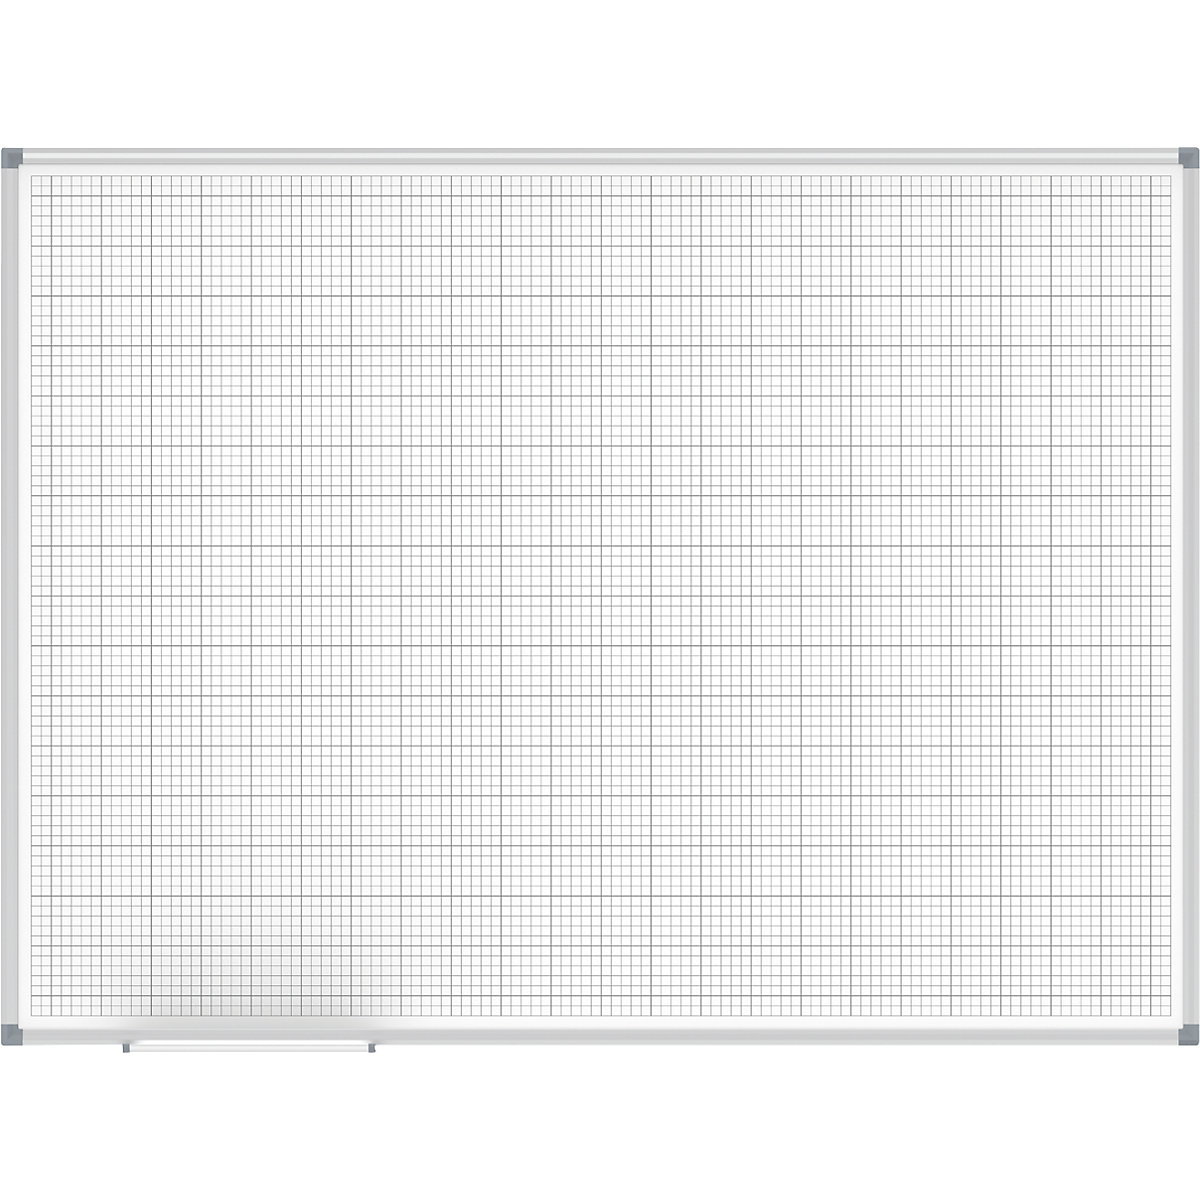 Lavagna a quadretti MAULstandard, bianco – MAUL, reticolo 10 x 10 / 50 x 50 mm, largh. x alt. 1200 x 900 mm-4